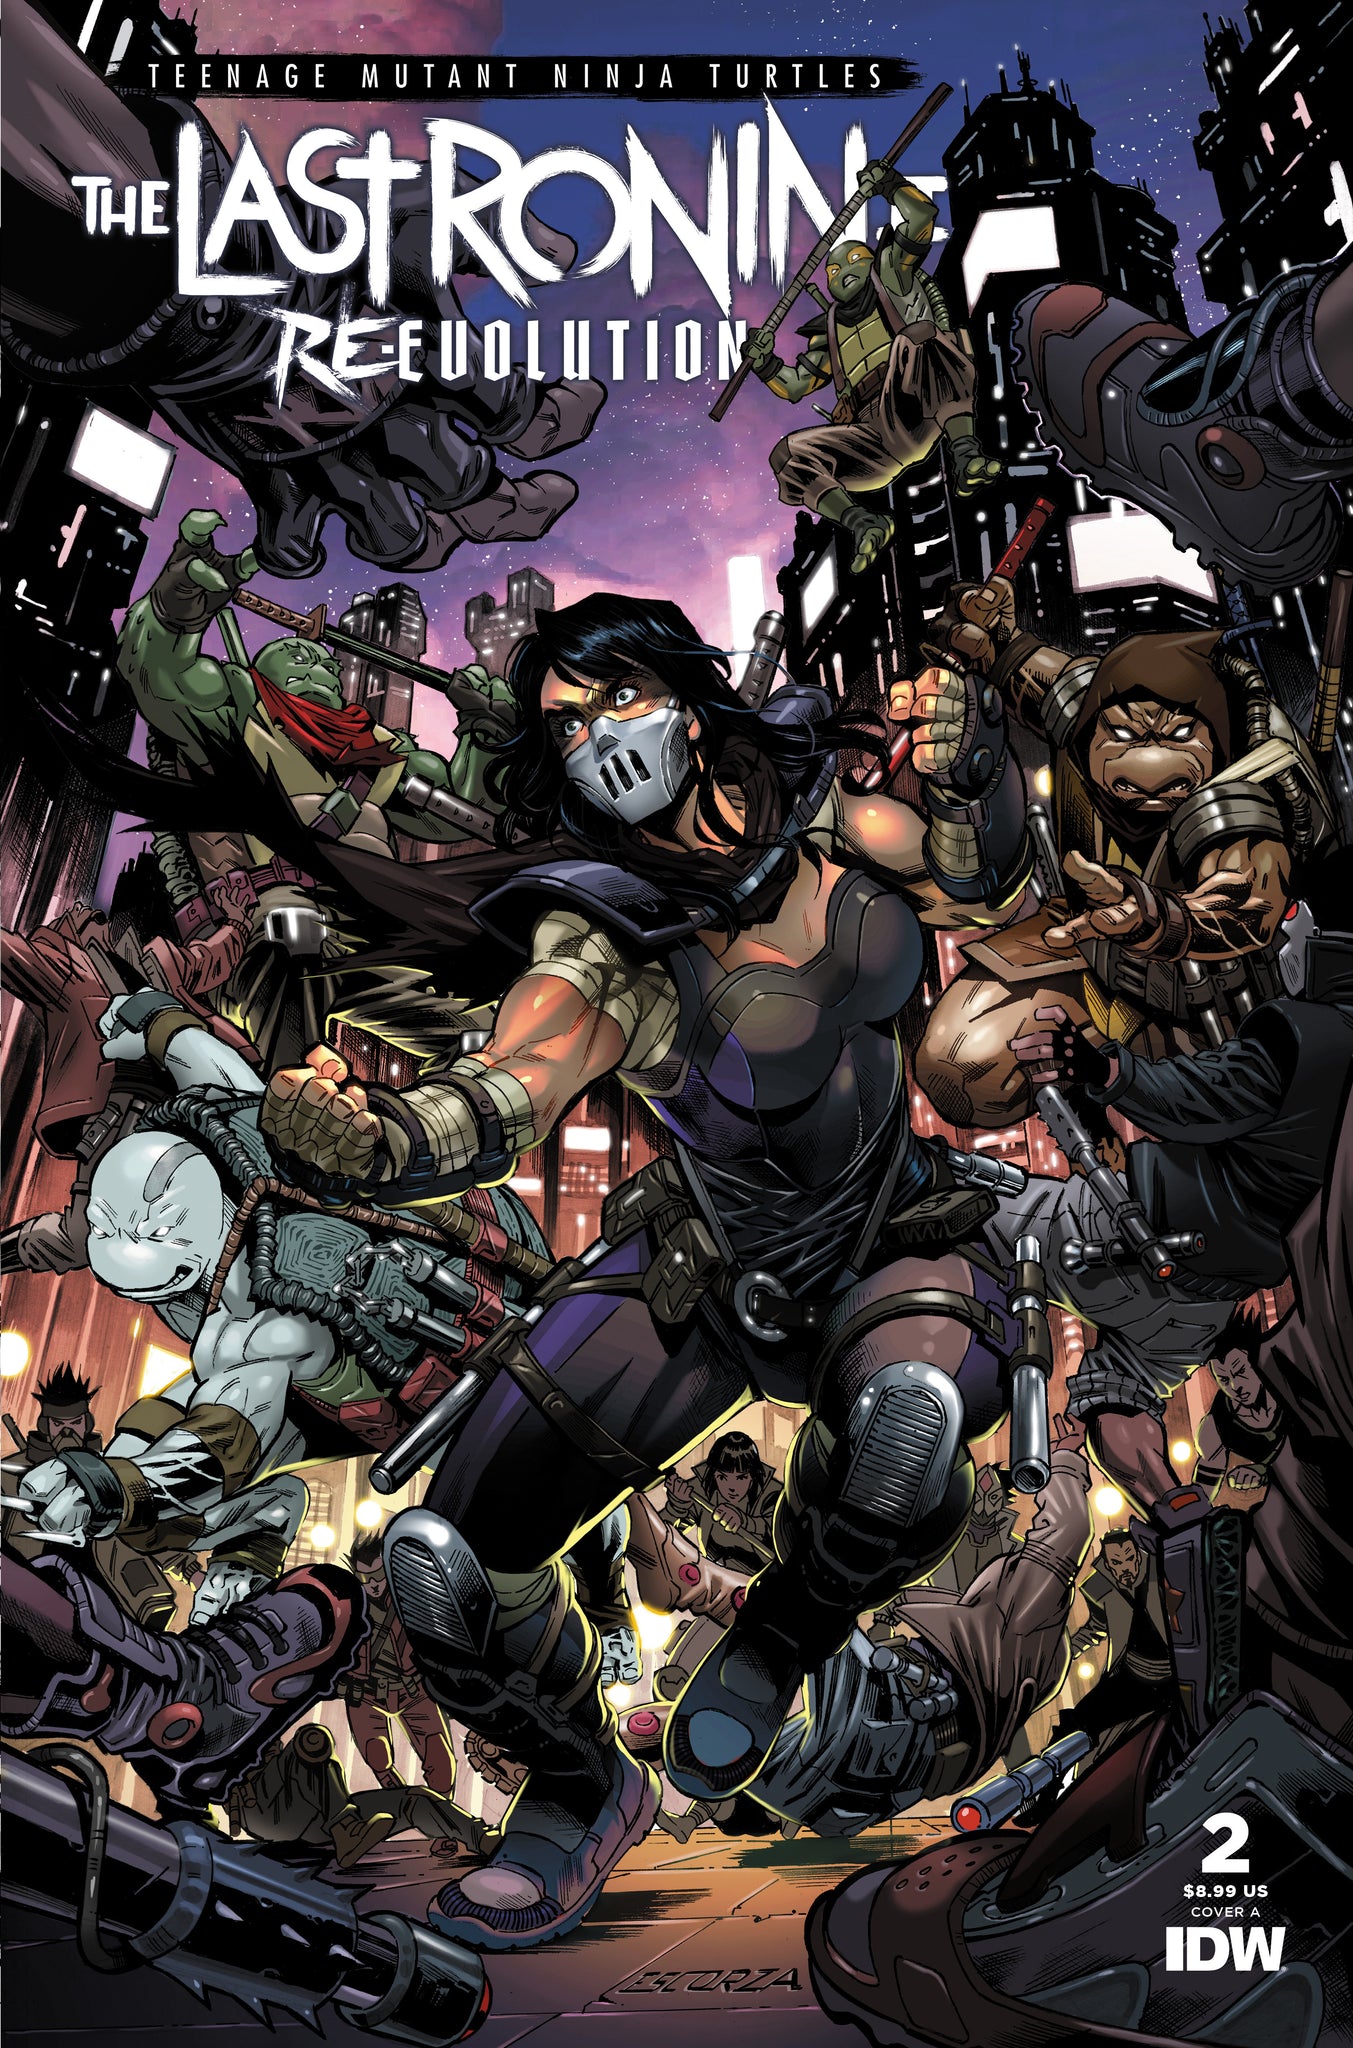 Teenage Mutant Ninja Turtles: The Last Ronin II--Re-Evolution #2